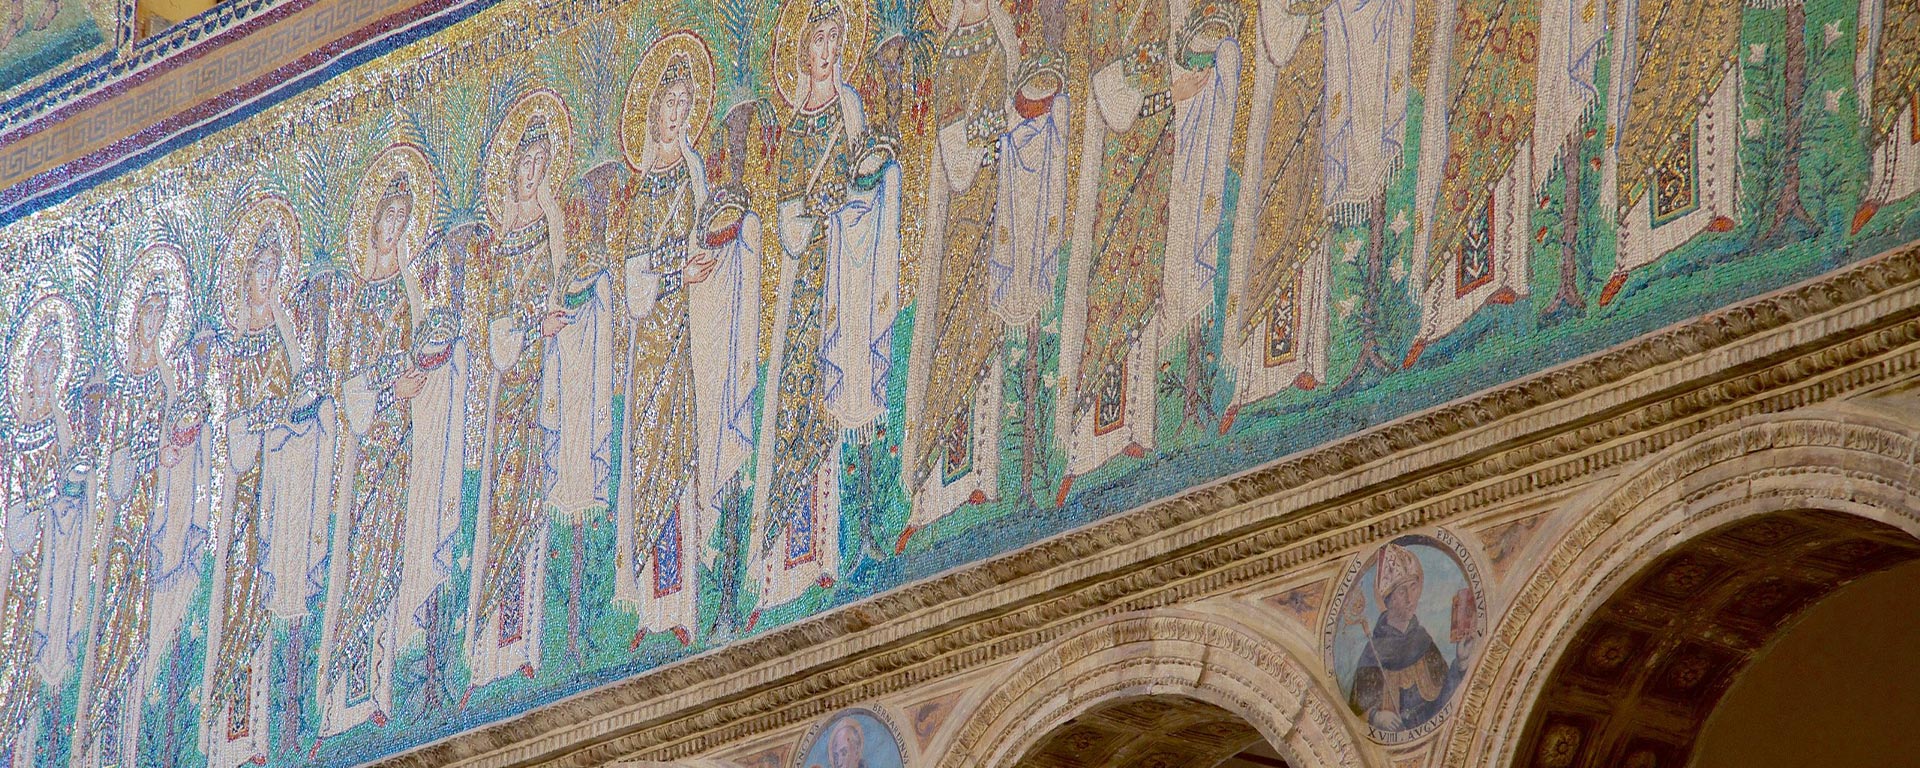 Unesco-Weltkulturerbe Ravenna